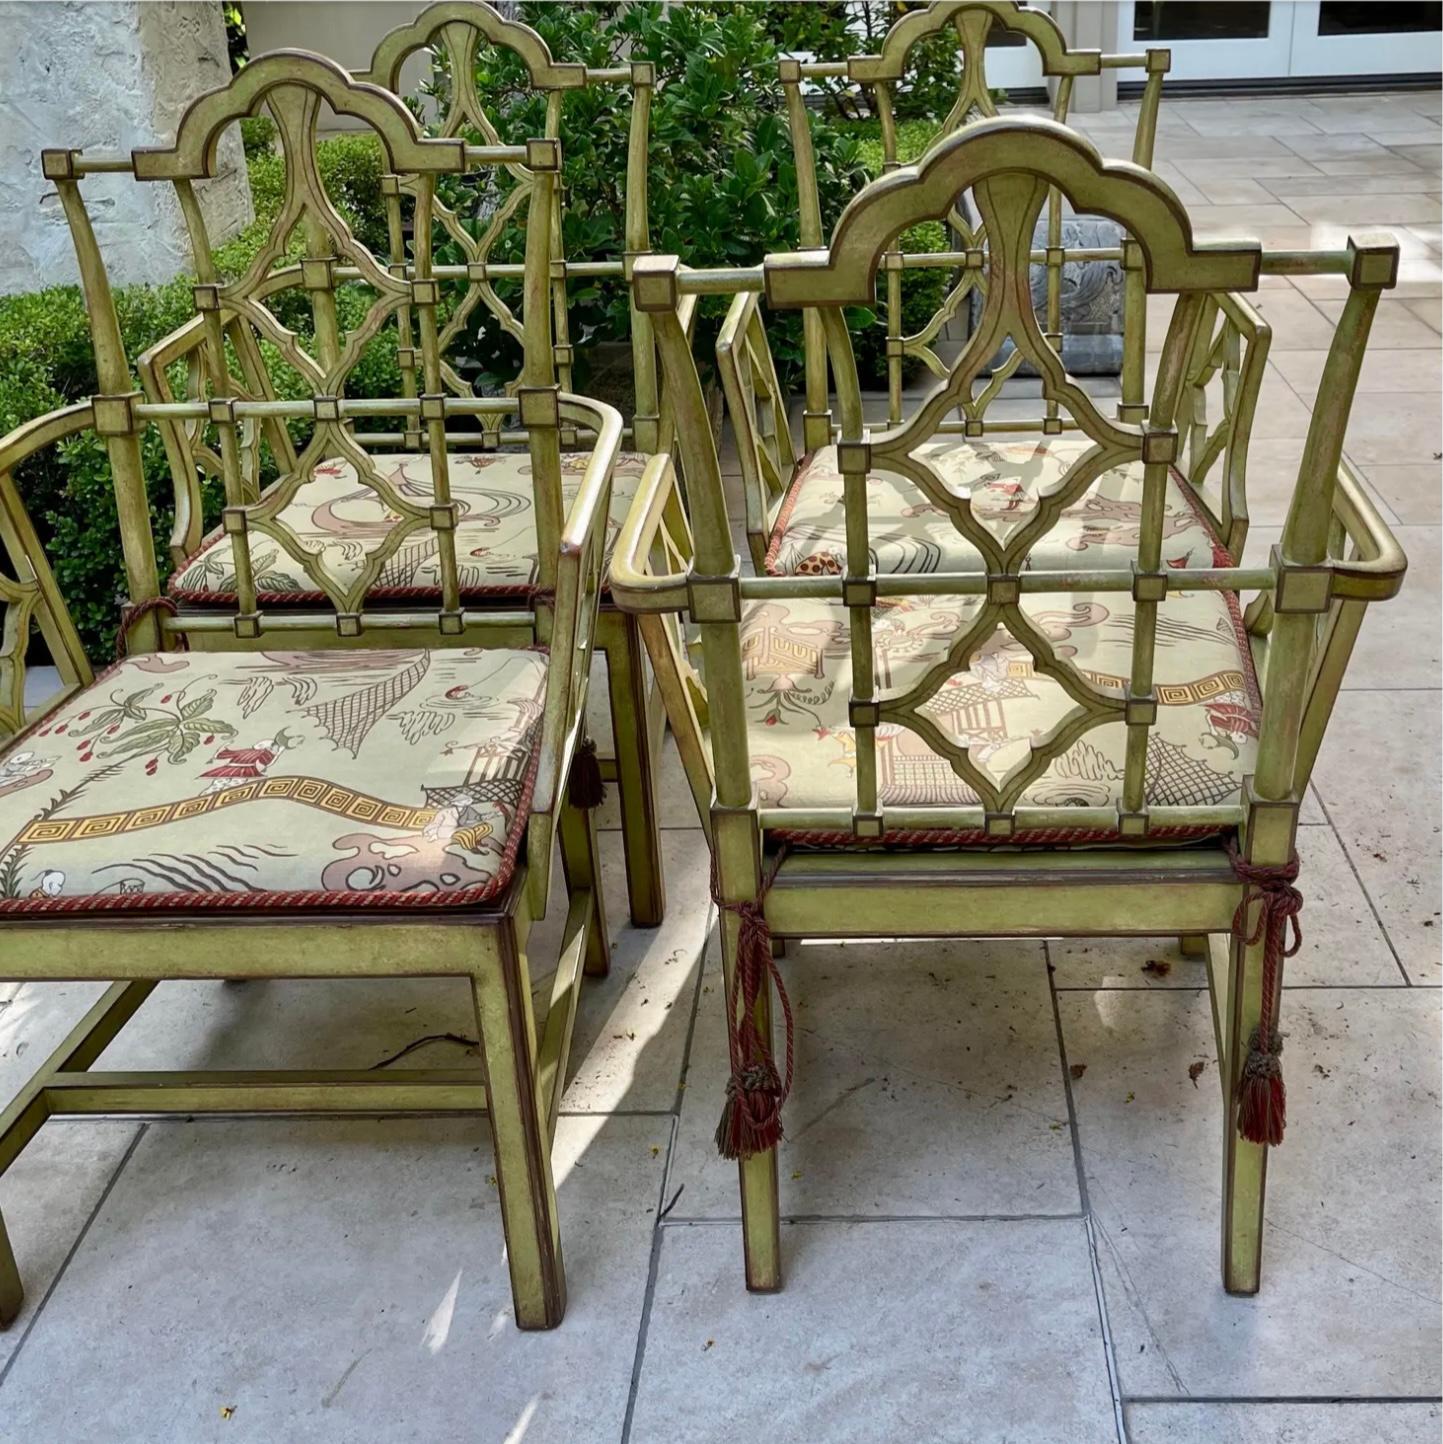 Preis pro Stück.
Patina Furniture Company Esszimmerstuhl aus grünem Chinoiserie-Bambusimitat
Dieses Angebot ist für 1 Stuhl, aber wir haben 3 verfügbar. 